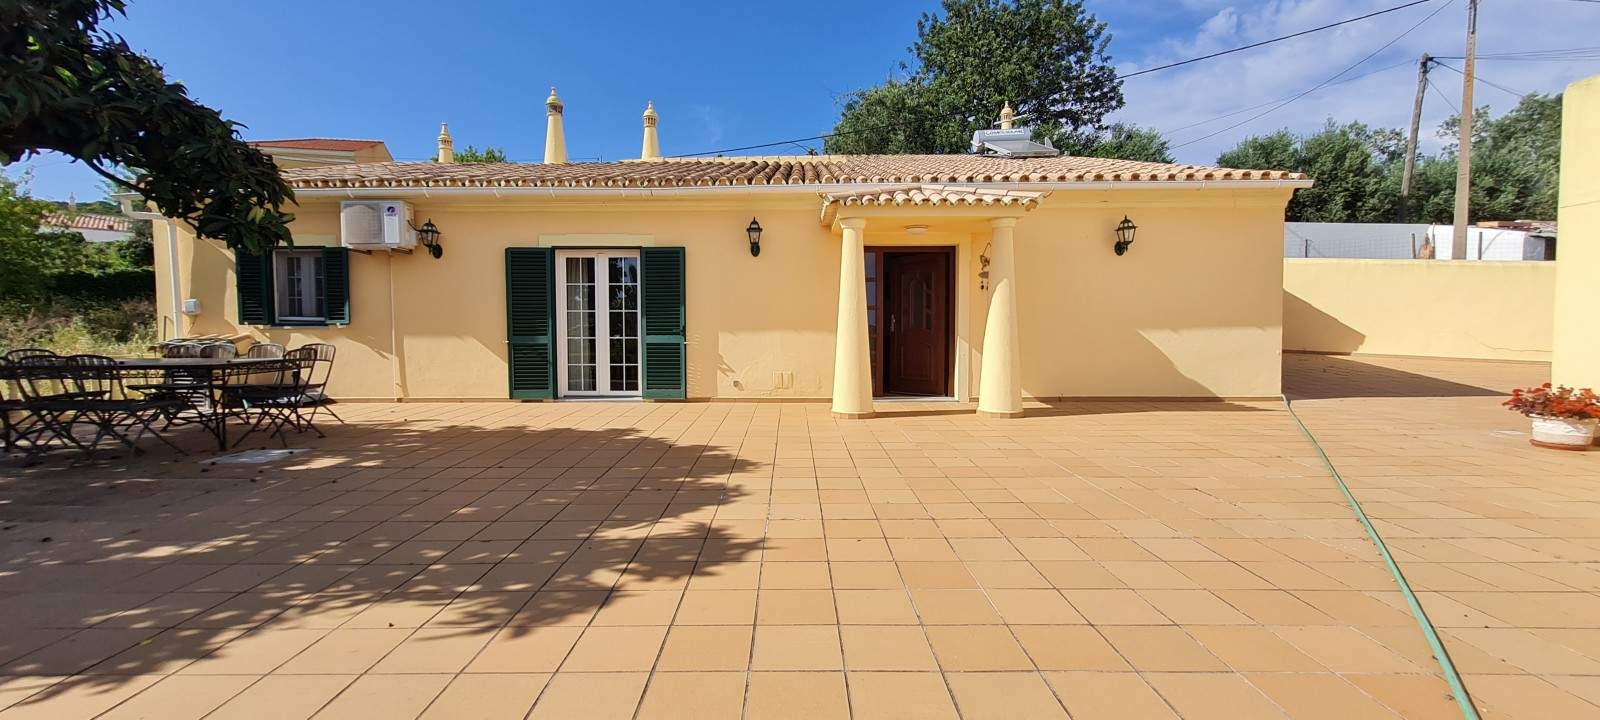 2 bedroom villa with garden, for sale, in São Brás de Alportel, Algarve_203391